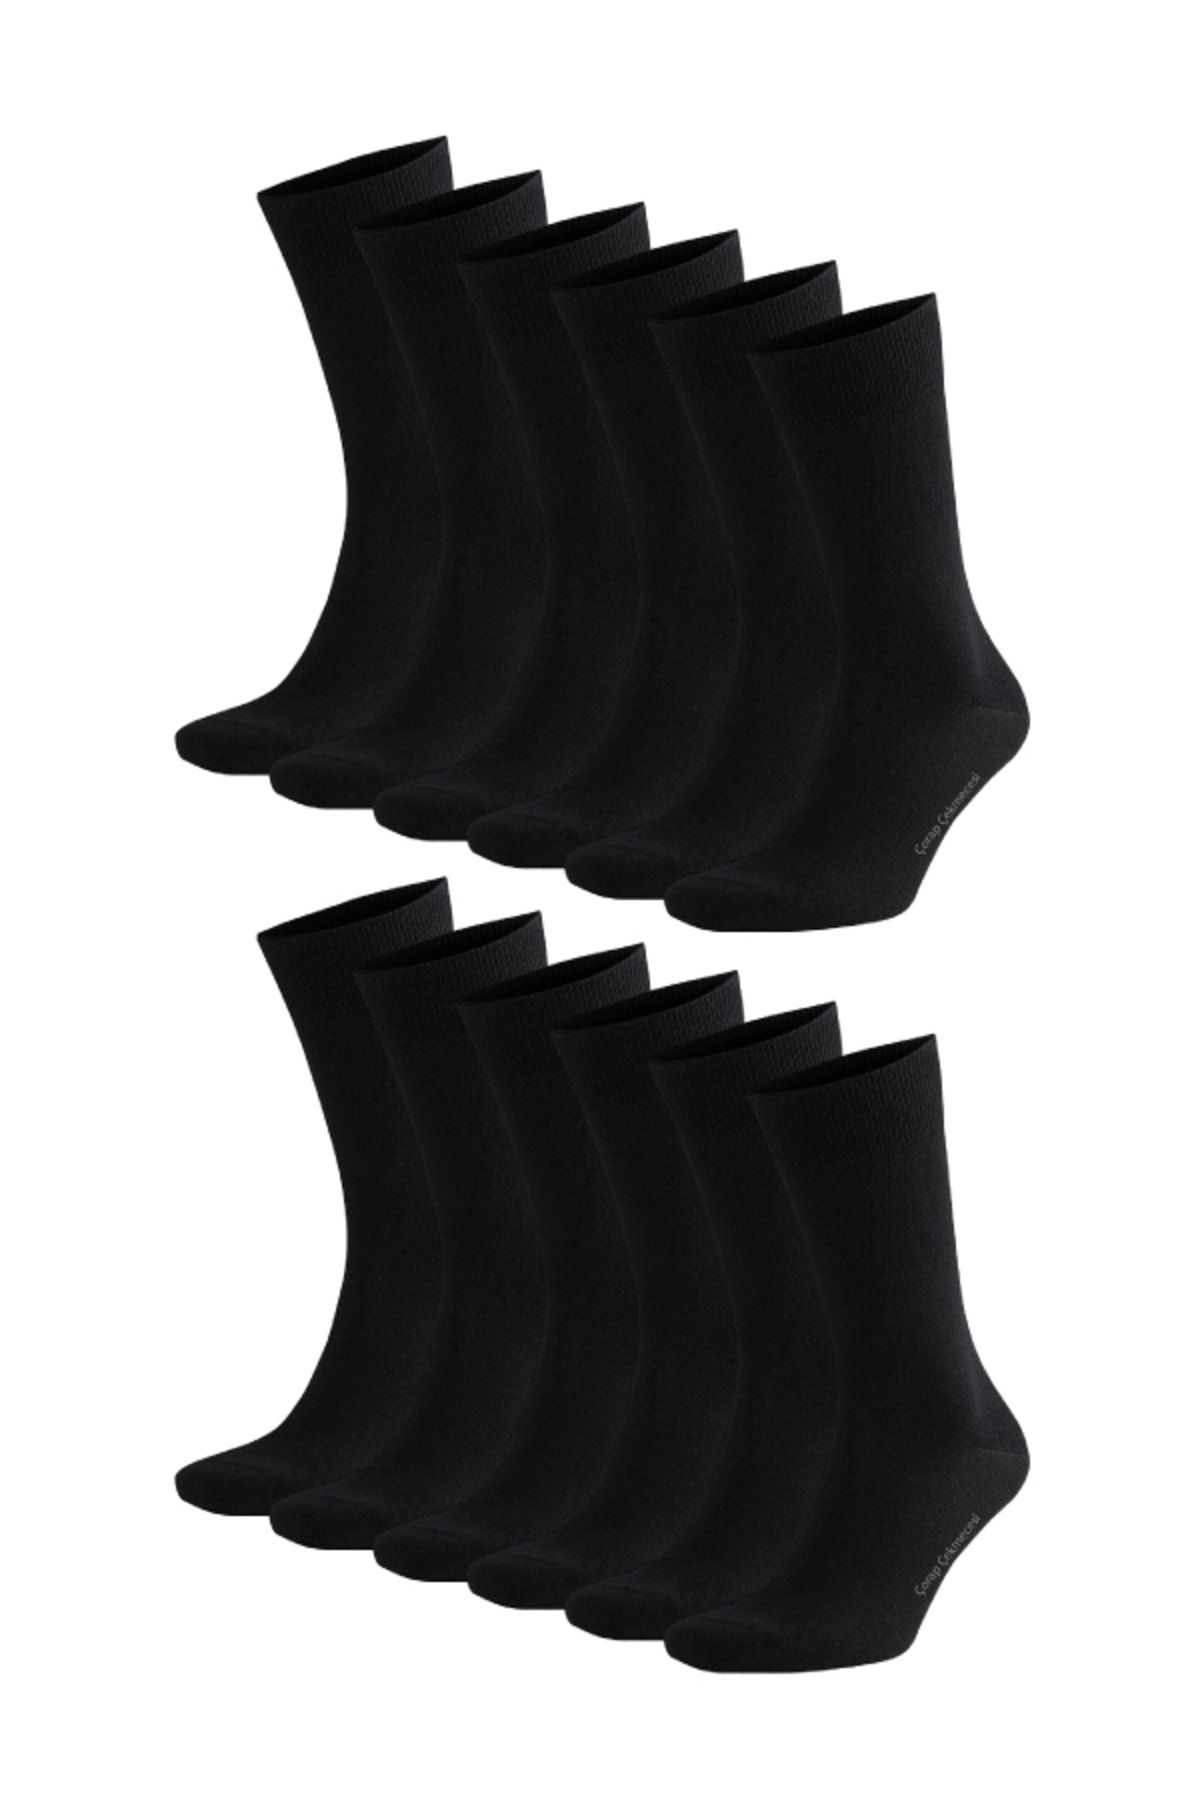 Çorap Çekmecesi Pamuklu Klasik Düz Siyah Çorap 12'li